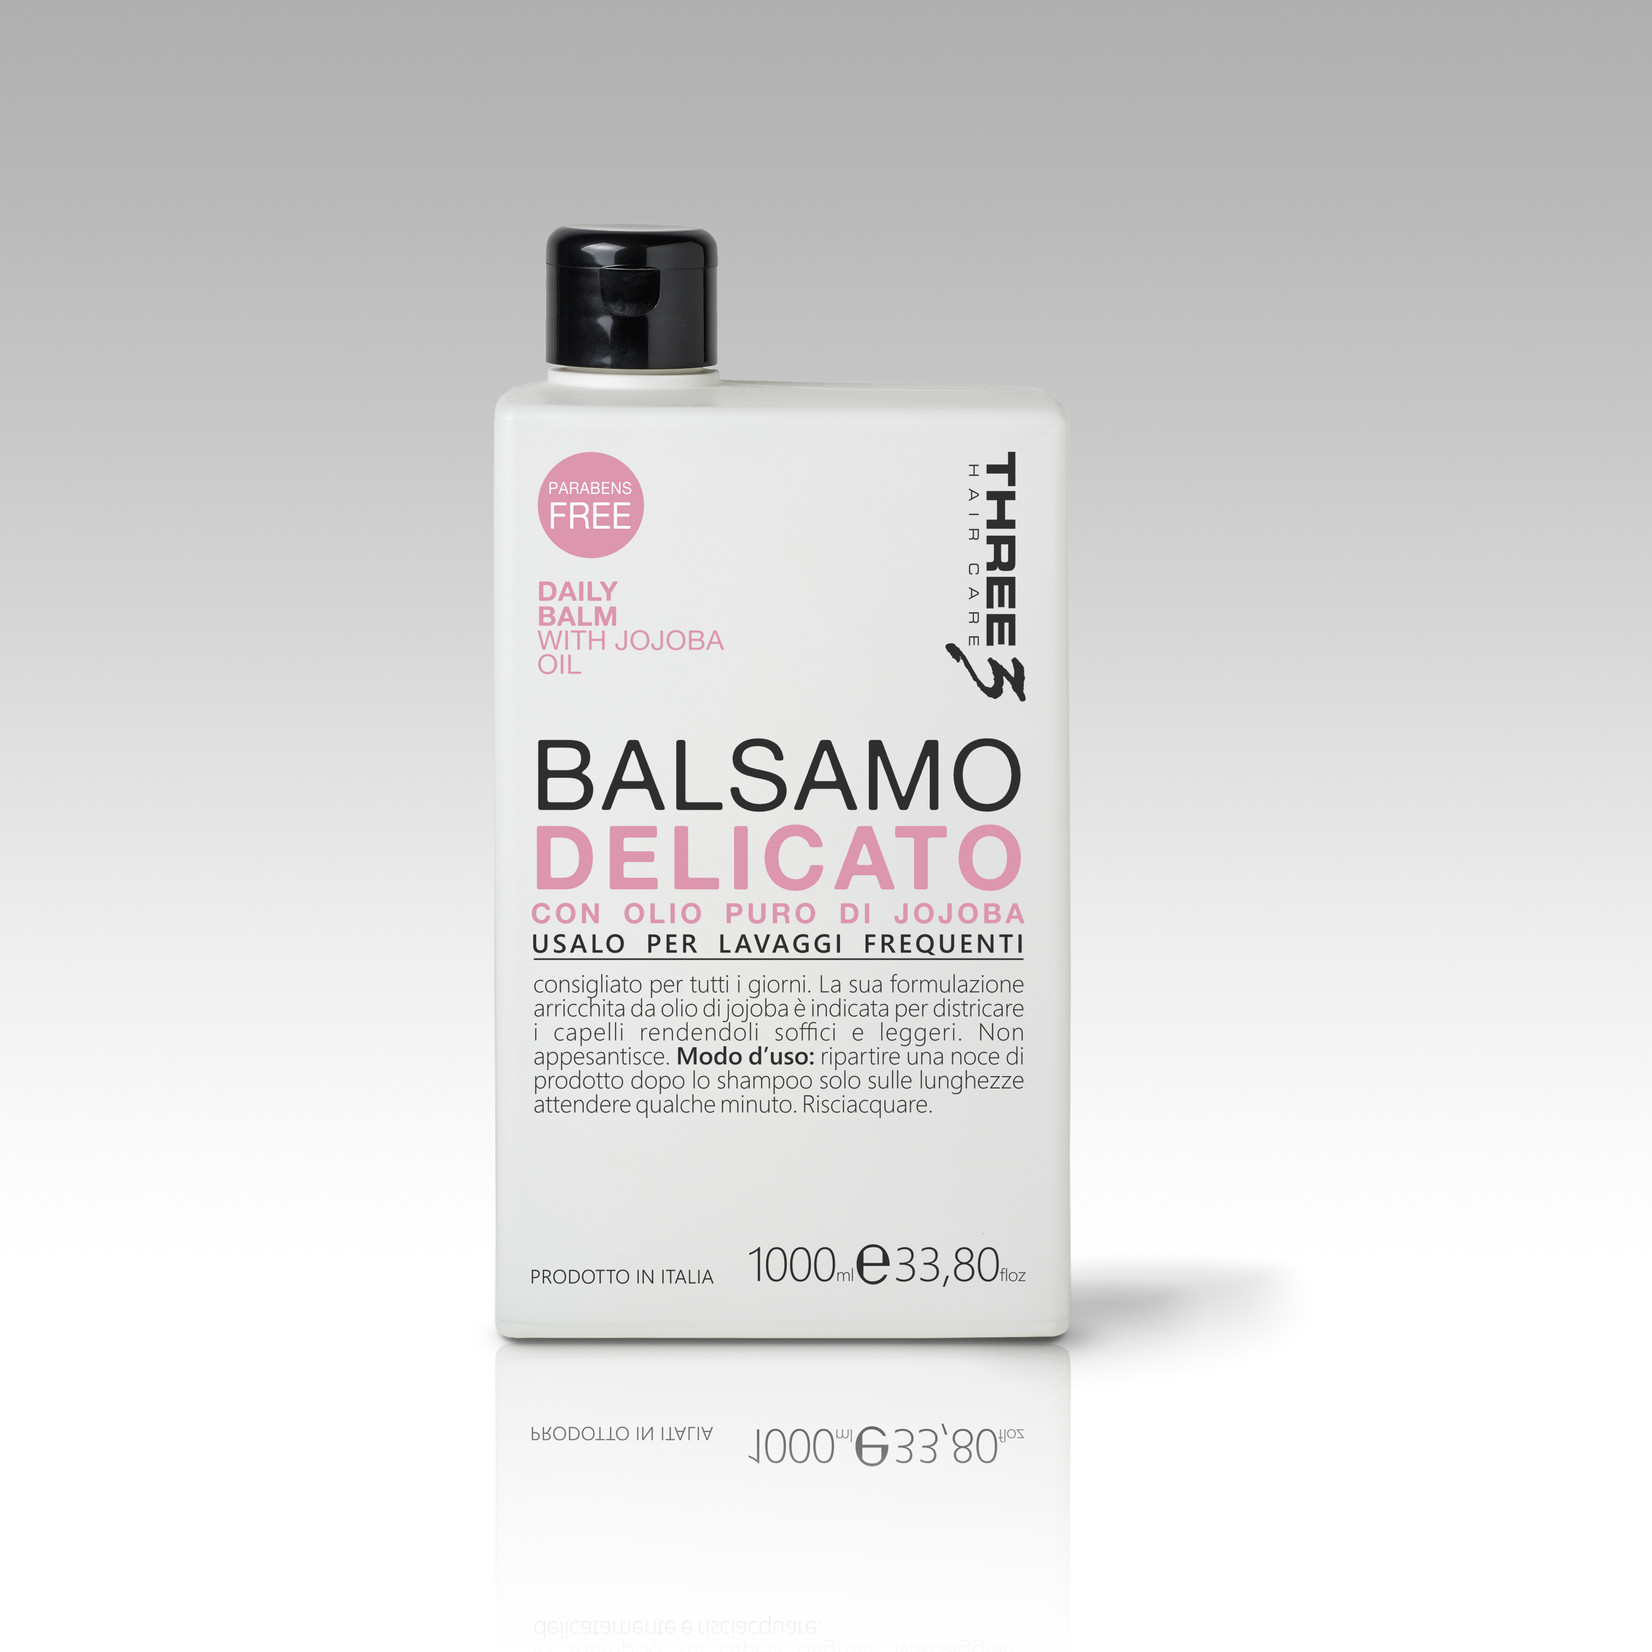 Faipa Three Balsamo Delicato 1l